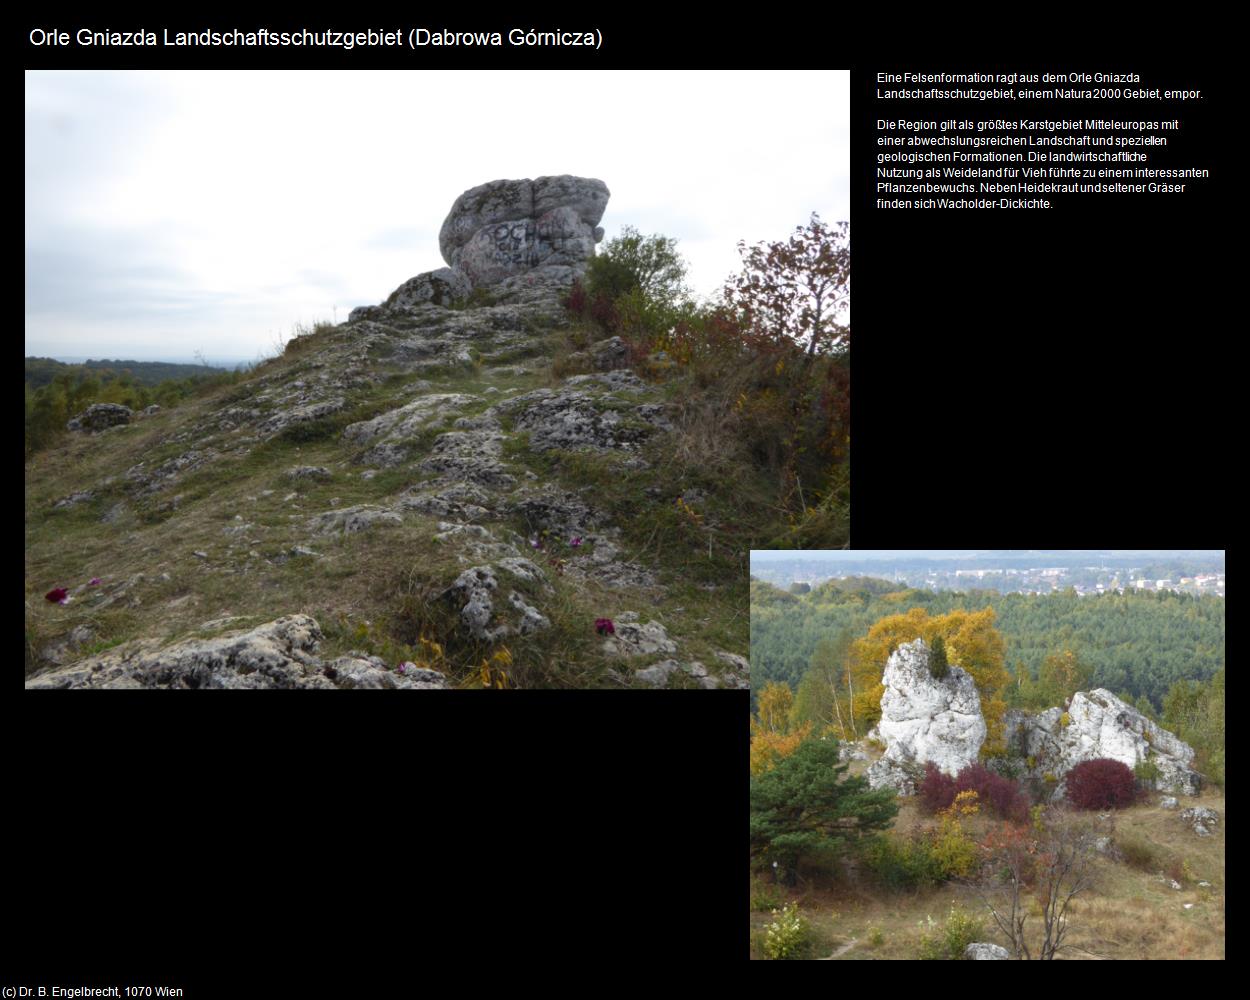 Orle Gniazda Landschaftsschutzgebiet (Preczów bei Dabrowa Górnicza) in POLEN-Schlesien